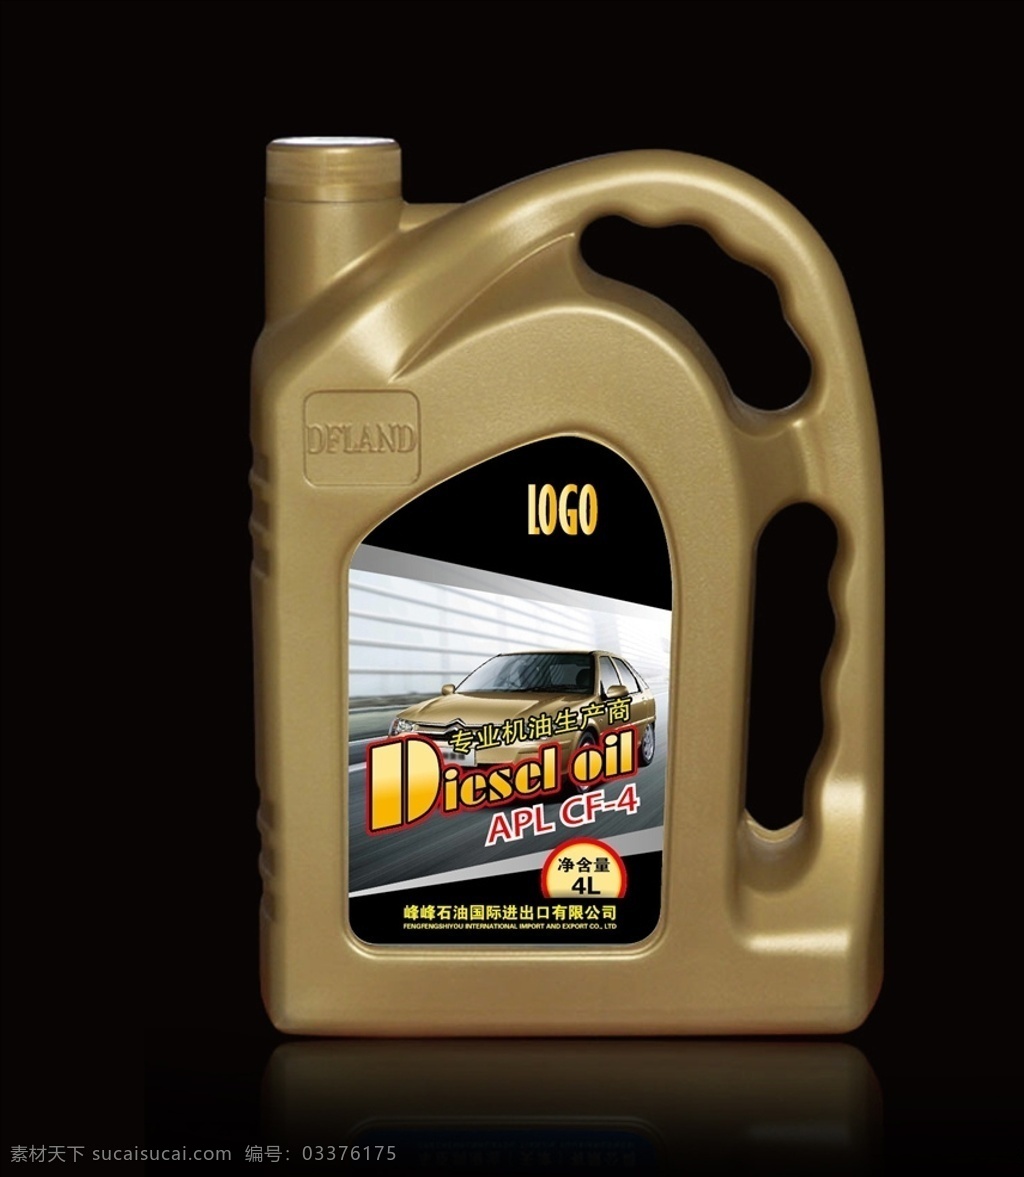 石油标贴 标贴 是有标贴 卡车 oil 4l 包装设计 图文标贴 产品标贴 外盒标贴 瓶标贴 罐标贴 盒标贴 矢量